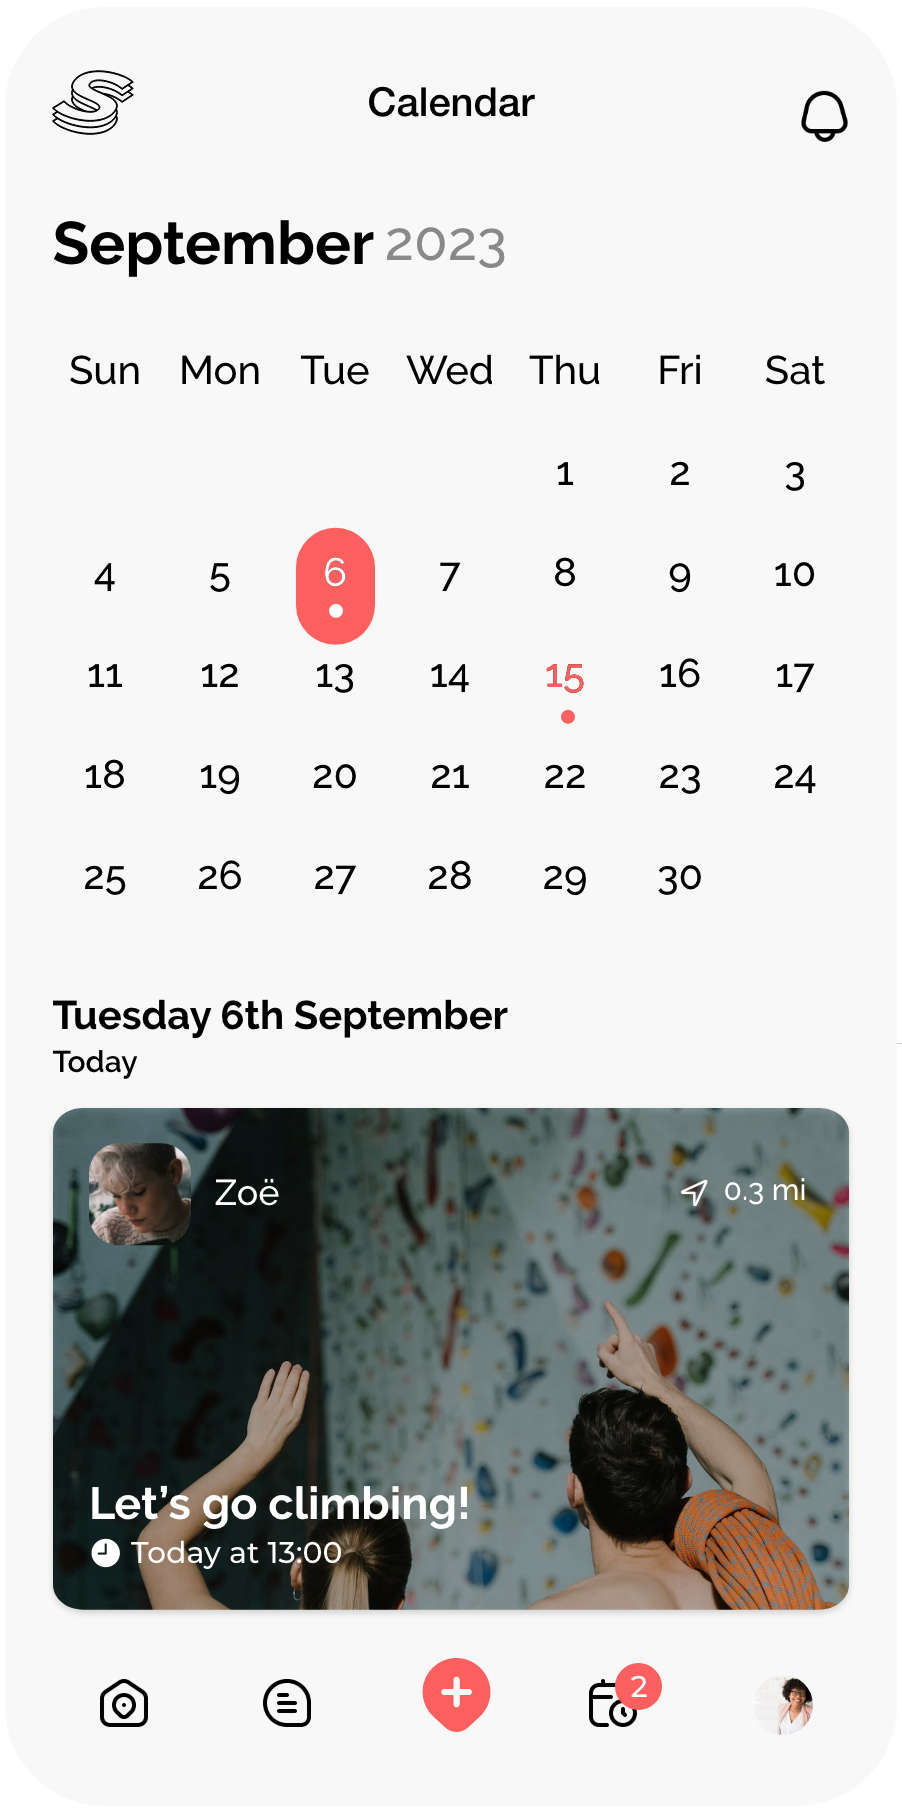 Socially app - Calendar screen